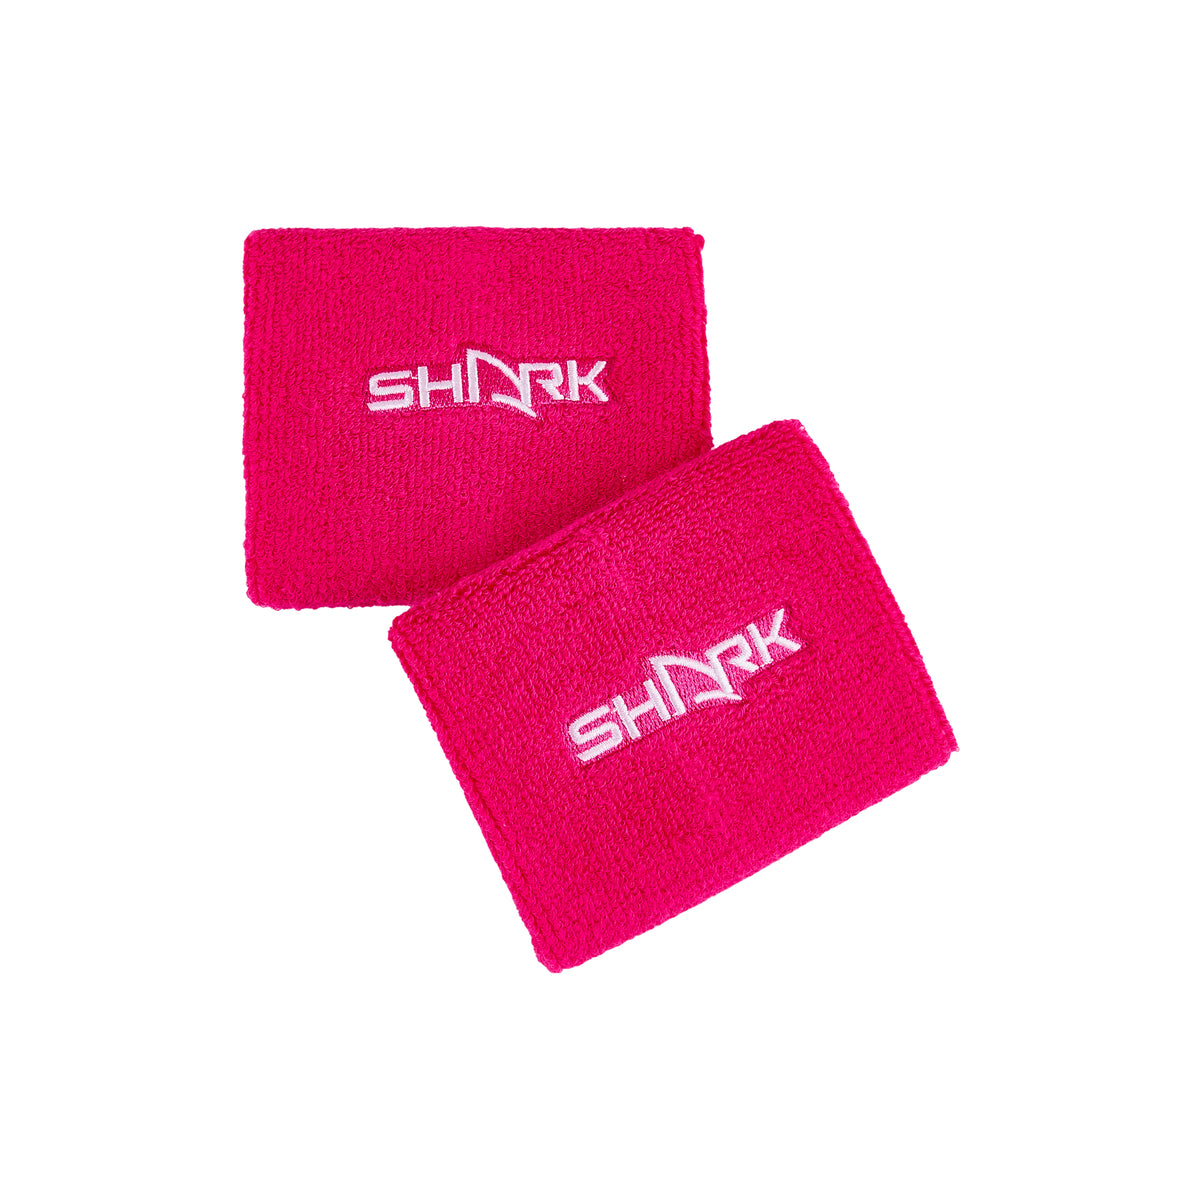 Shark Wristband X 2 - Pink